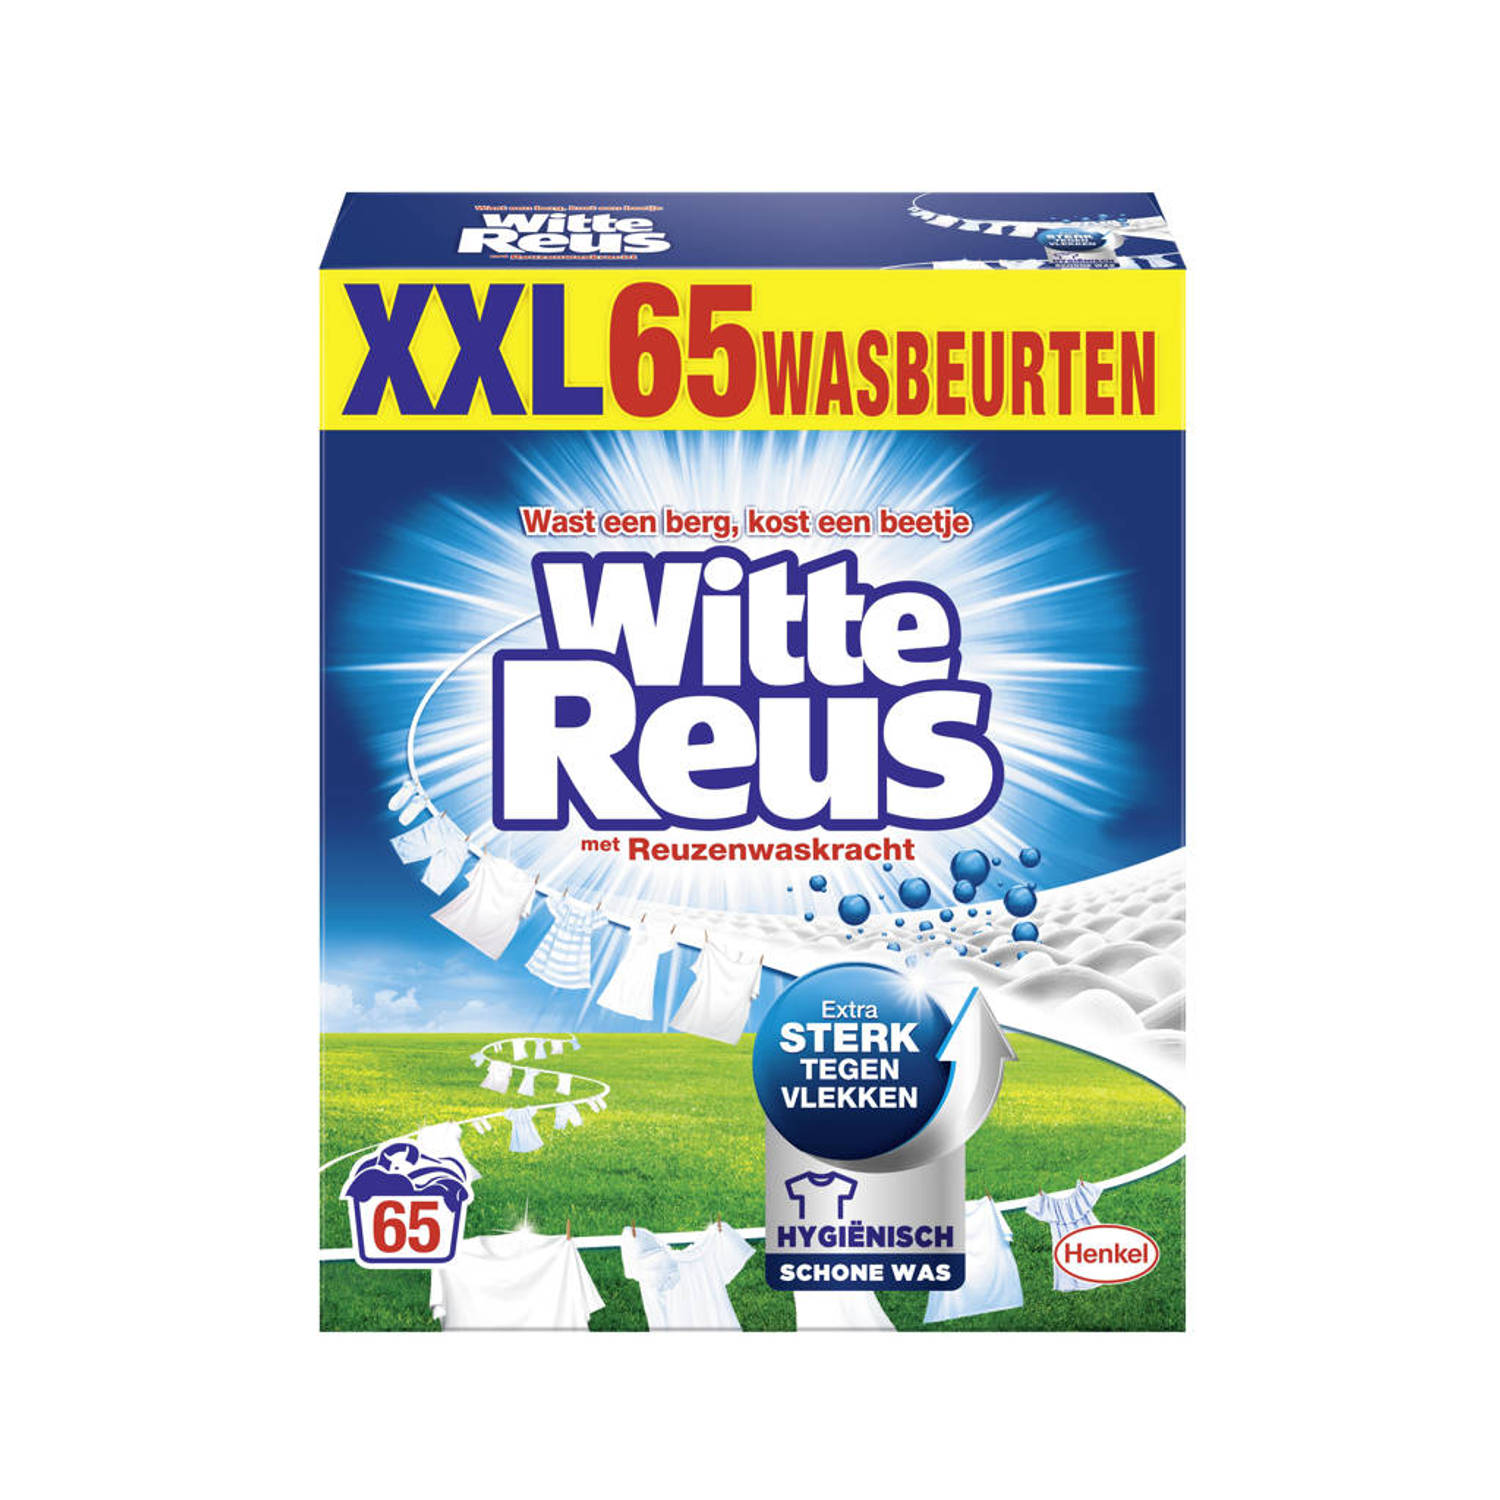 Witte Reus Waspoeder - Kwartaalverpakking - 65 wasbeurten